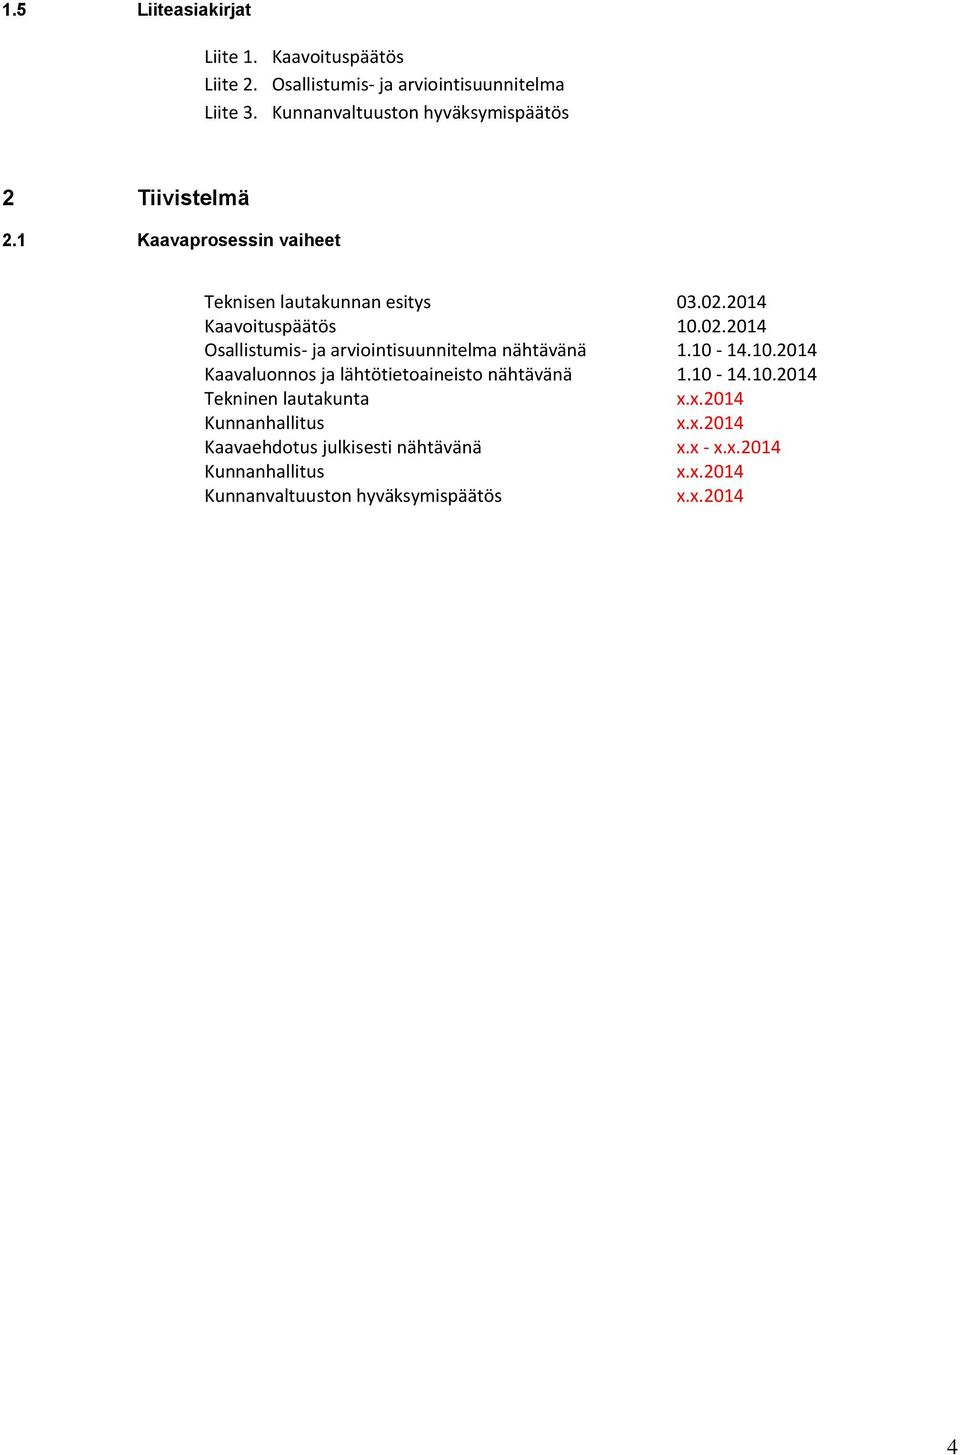 2014 Kaavoituspäätös 10.02.2014 Osallistumis- ja arviointisuunnitelma nähtävänä 1.10-14.10.2014 Kaavaluonnos ja lähtötietoaineisto nähtävänä 1.